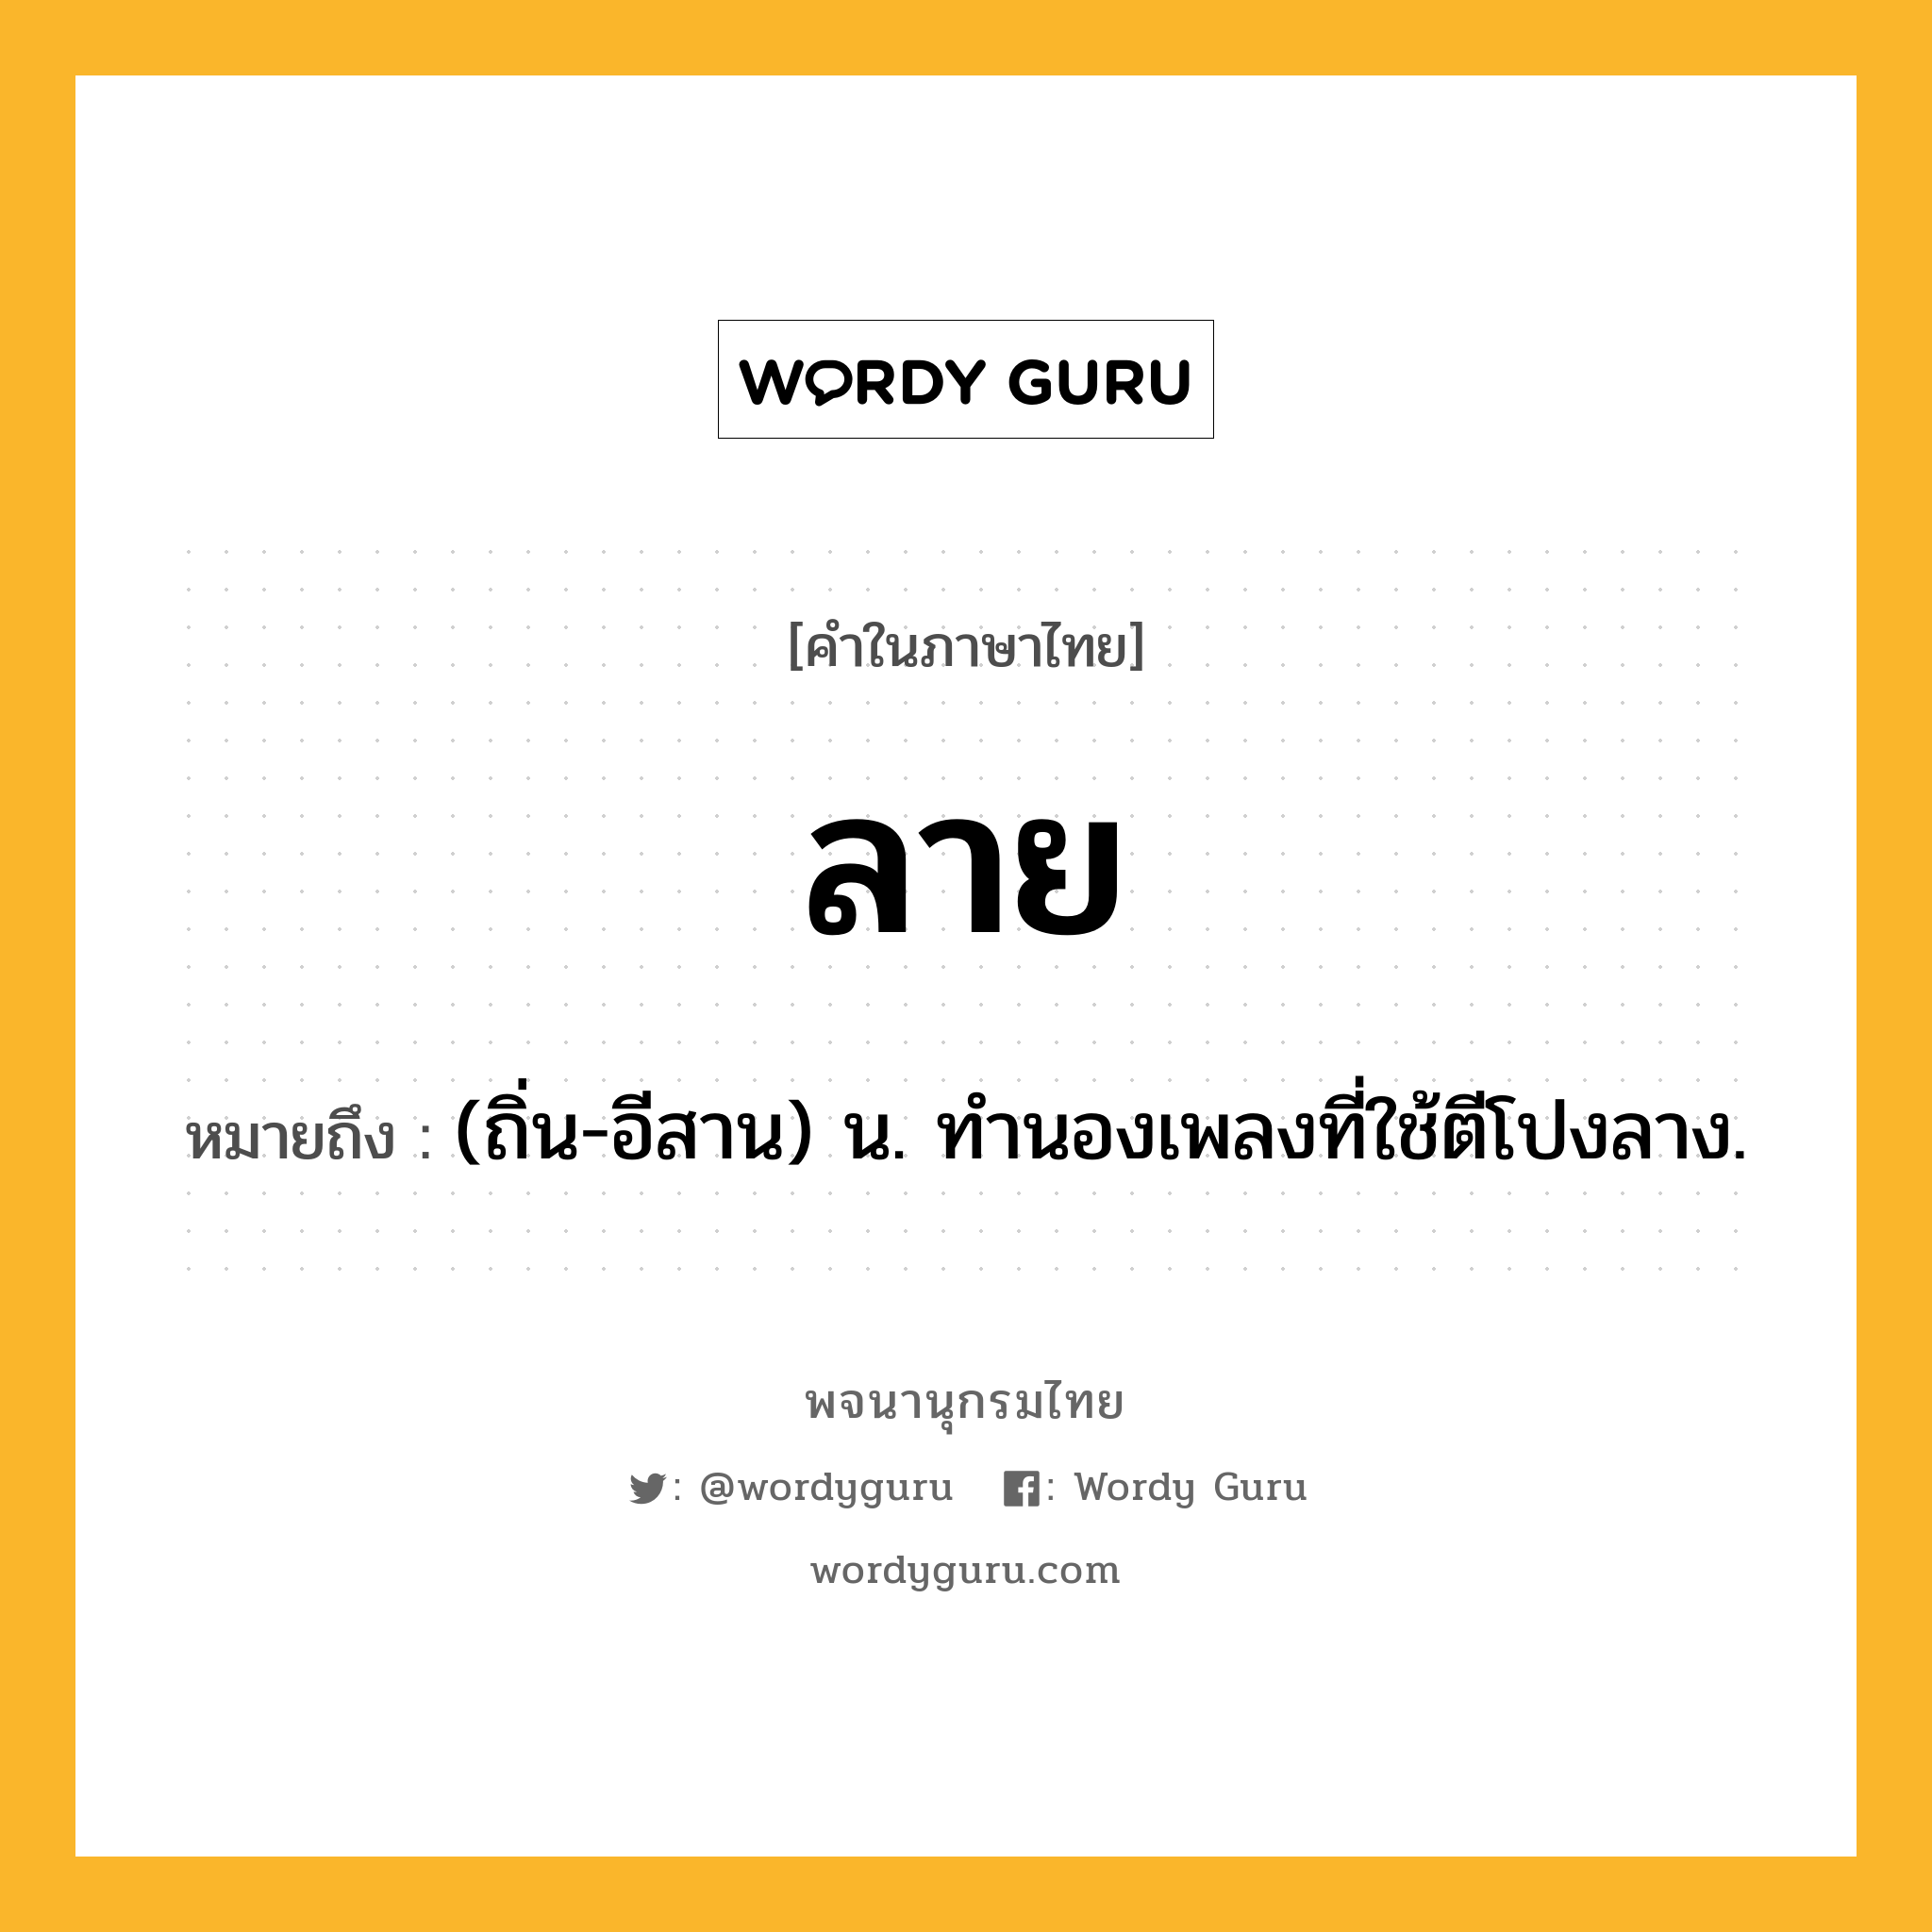 ลาย ความหมาย หมายถึงอะไร?, คำในภาษาไทย ลาย หมายถึง (ถิ่น-อีสาน) น. ทำนองเพลงที่ใช้ตีโปงลาง.